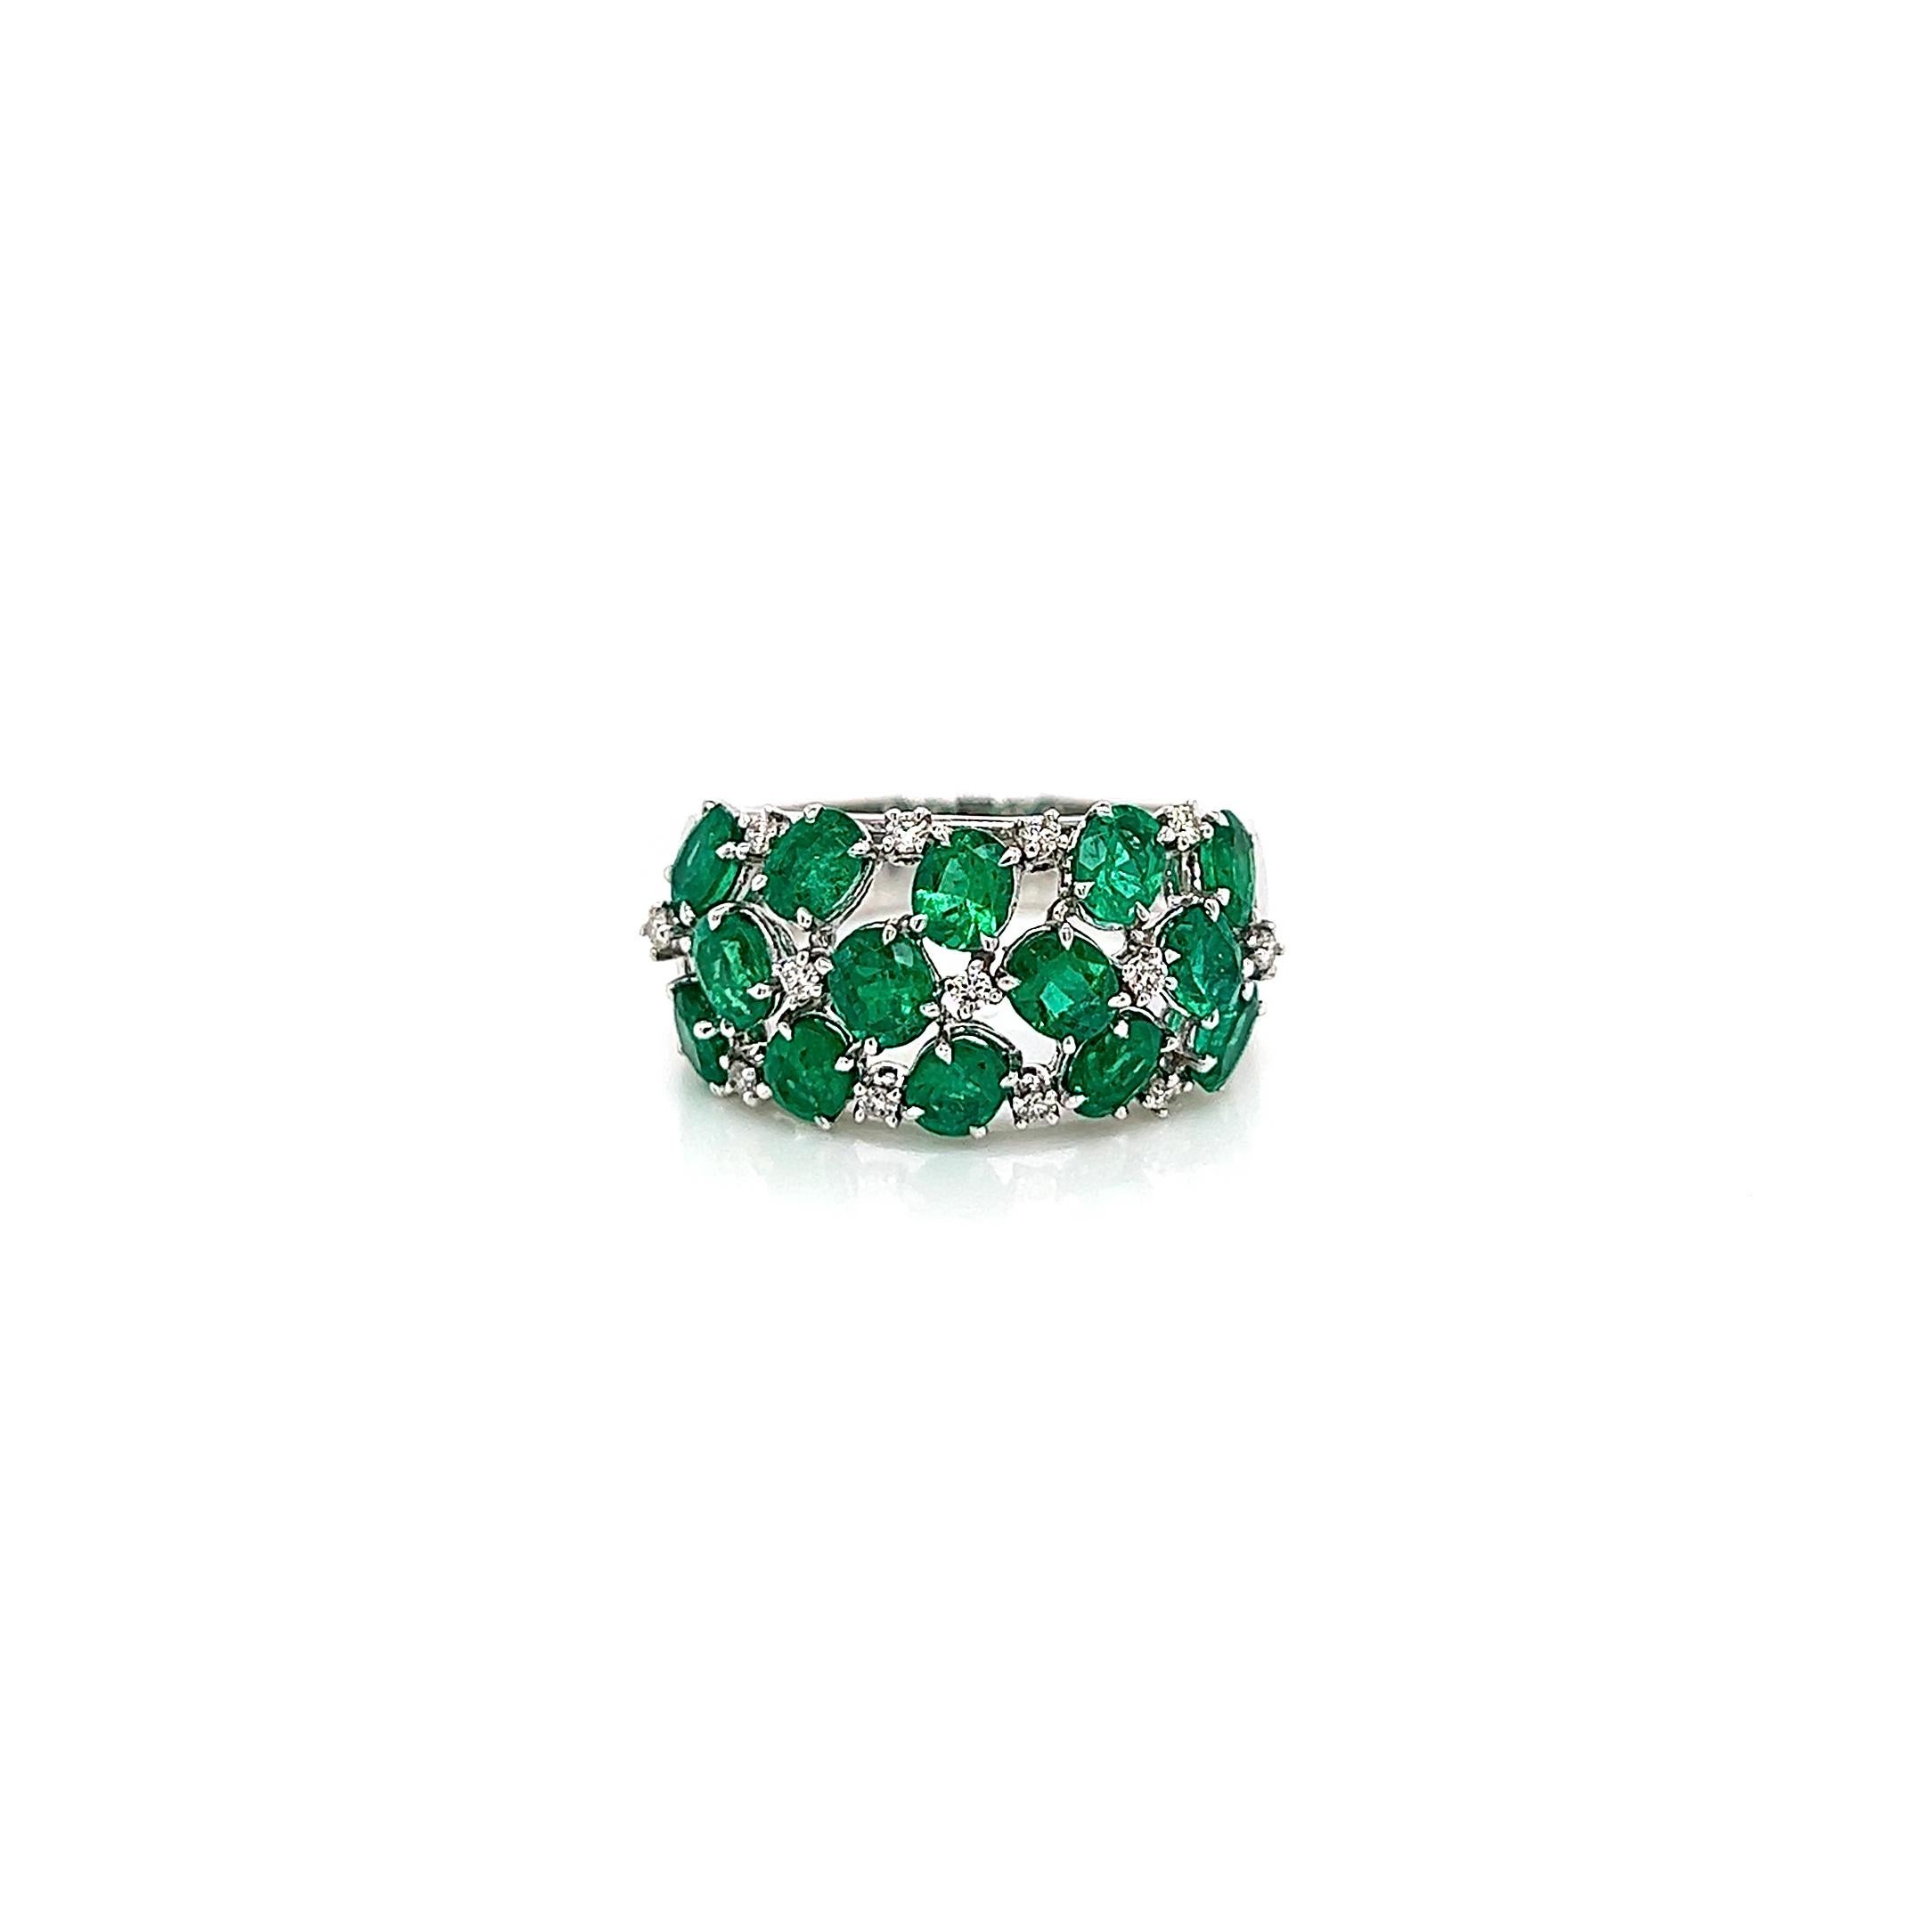 2.74 Karat Grüner Smaragd und Diamant Damenring

-Metall Typ: 18K Weißgold
-2,59 Karat Ovale kolumbianische grüne Smaragde
-0,15 Karat runde natürliche Diamanten, Farbe G-H, Reinheit VS-SI
-Größe 7.0

Hergestellt in New York City.